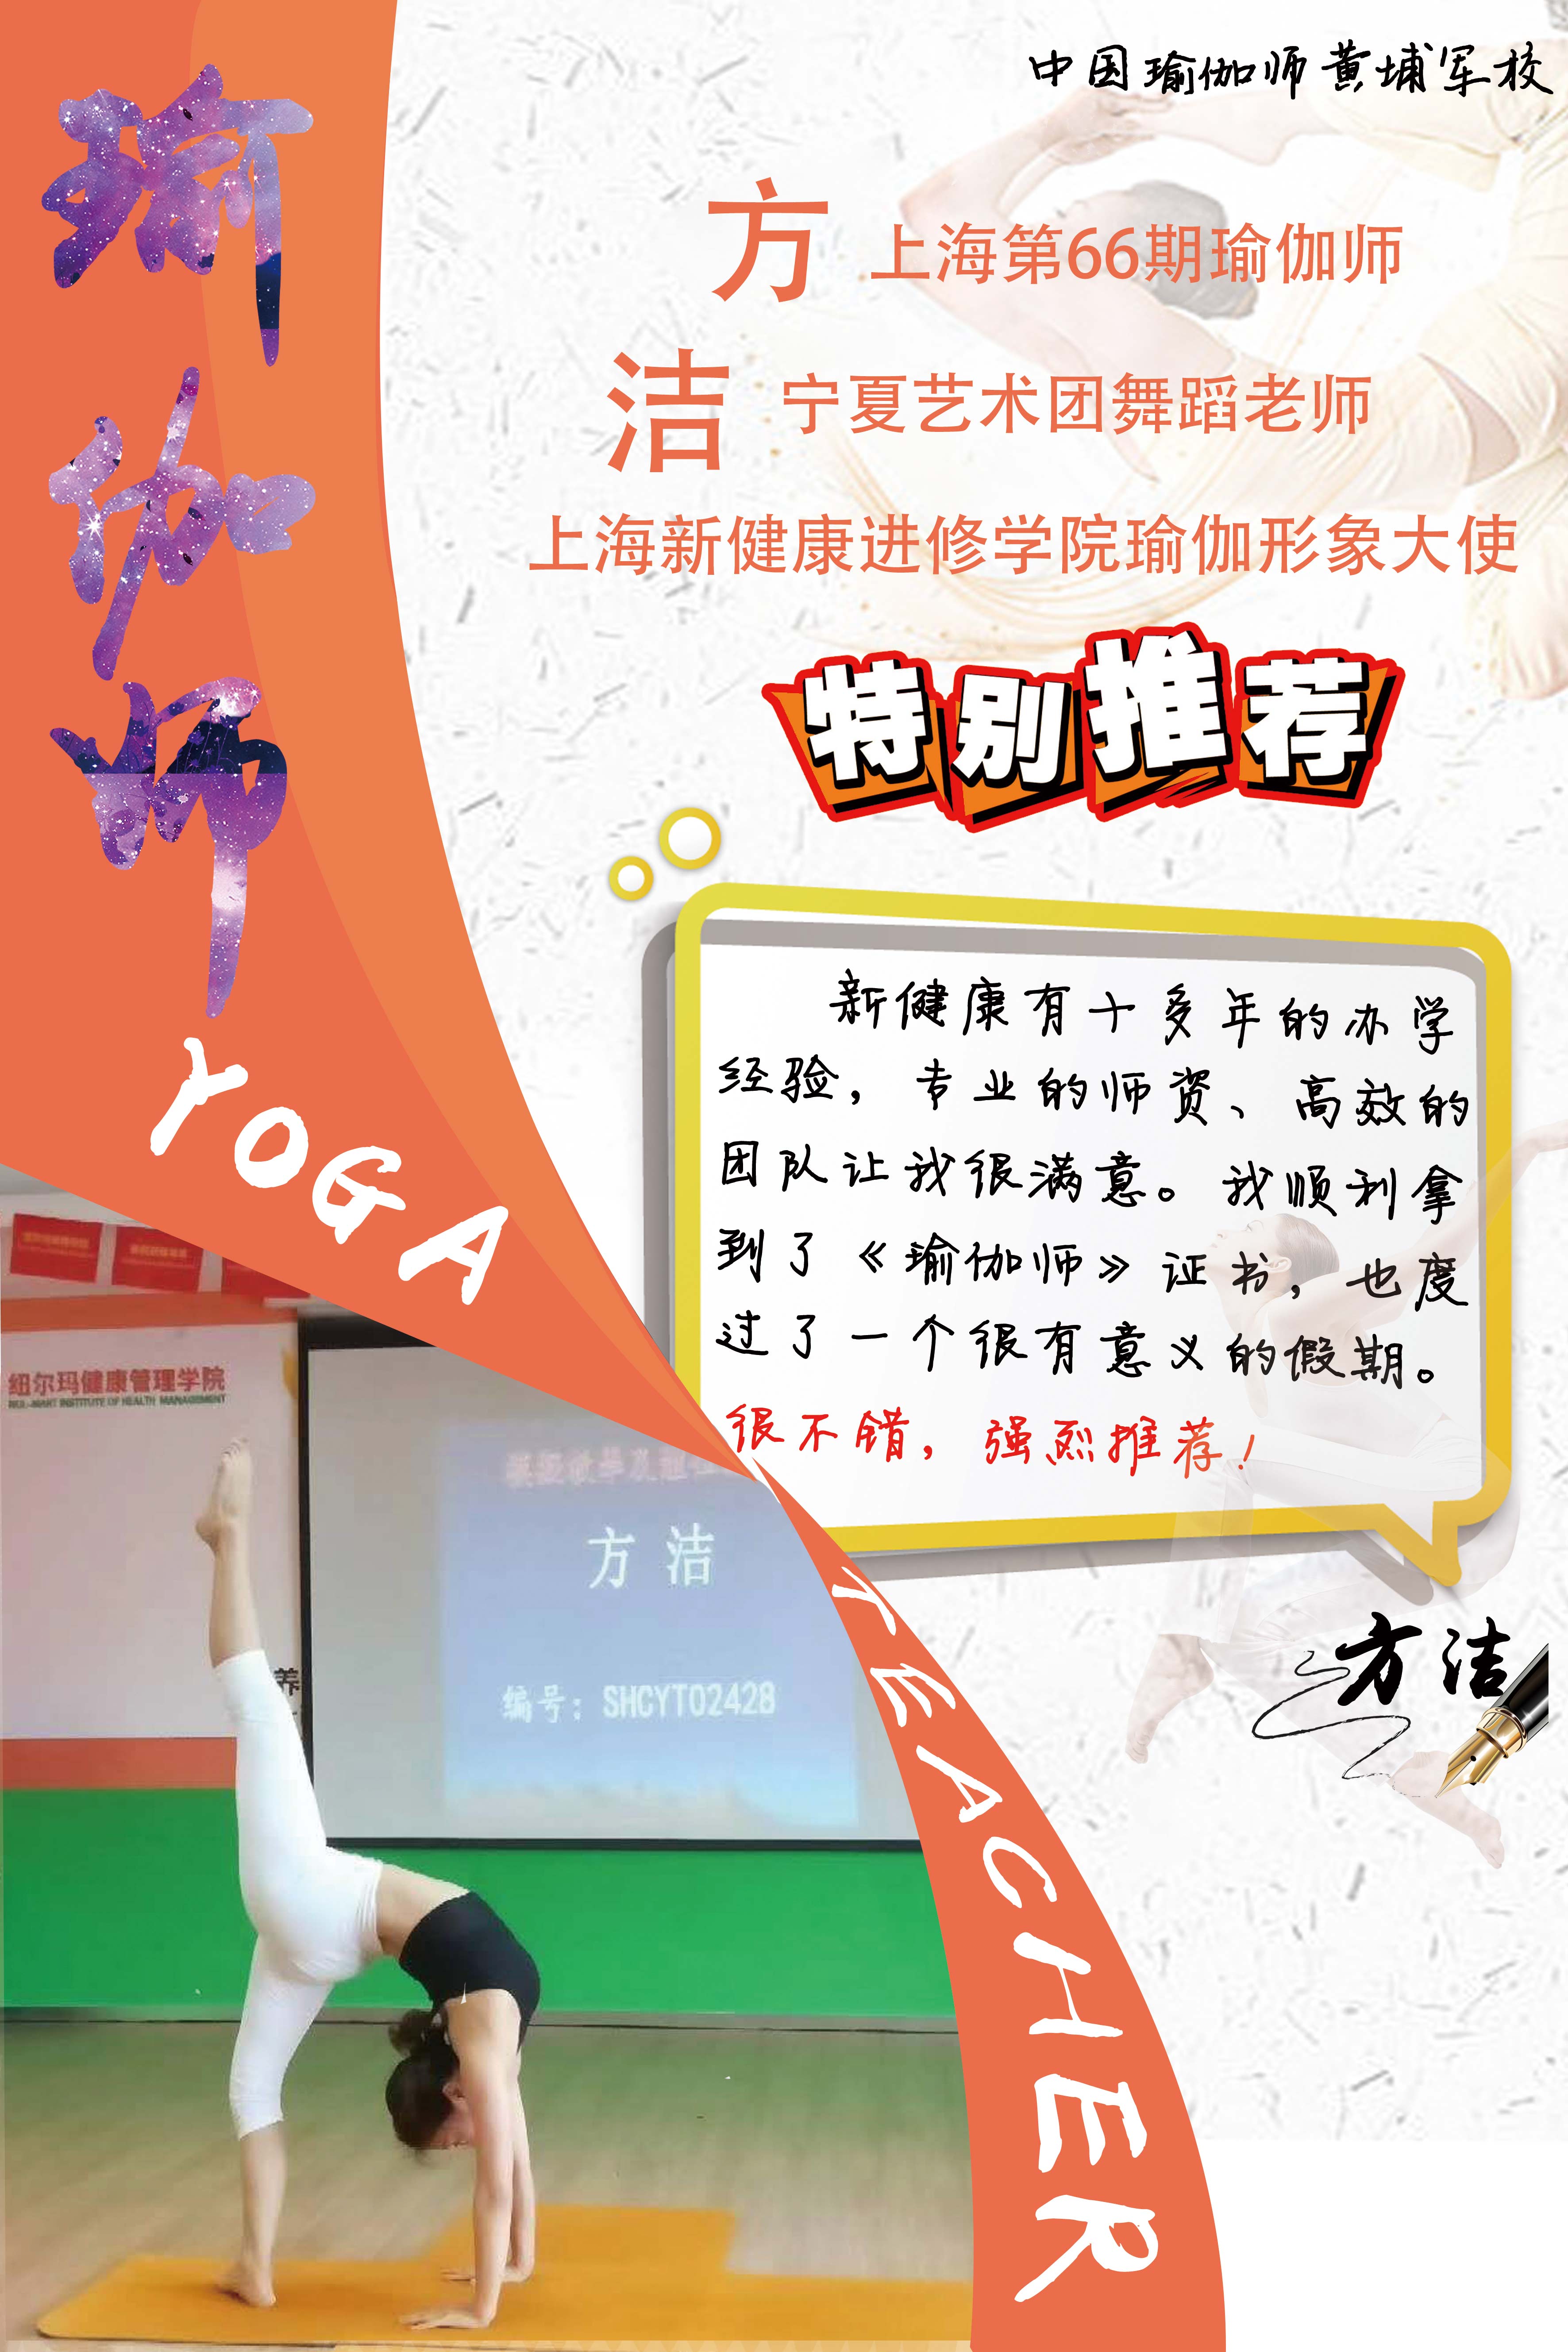 上海新健康学院瑜伽师职业资格培训课程